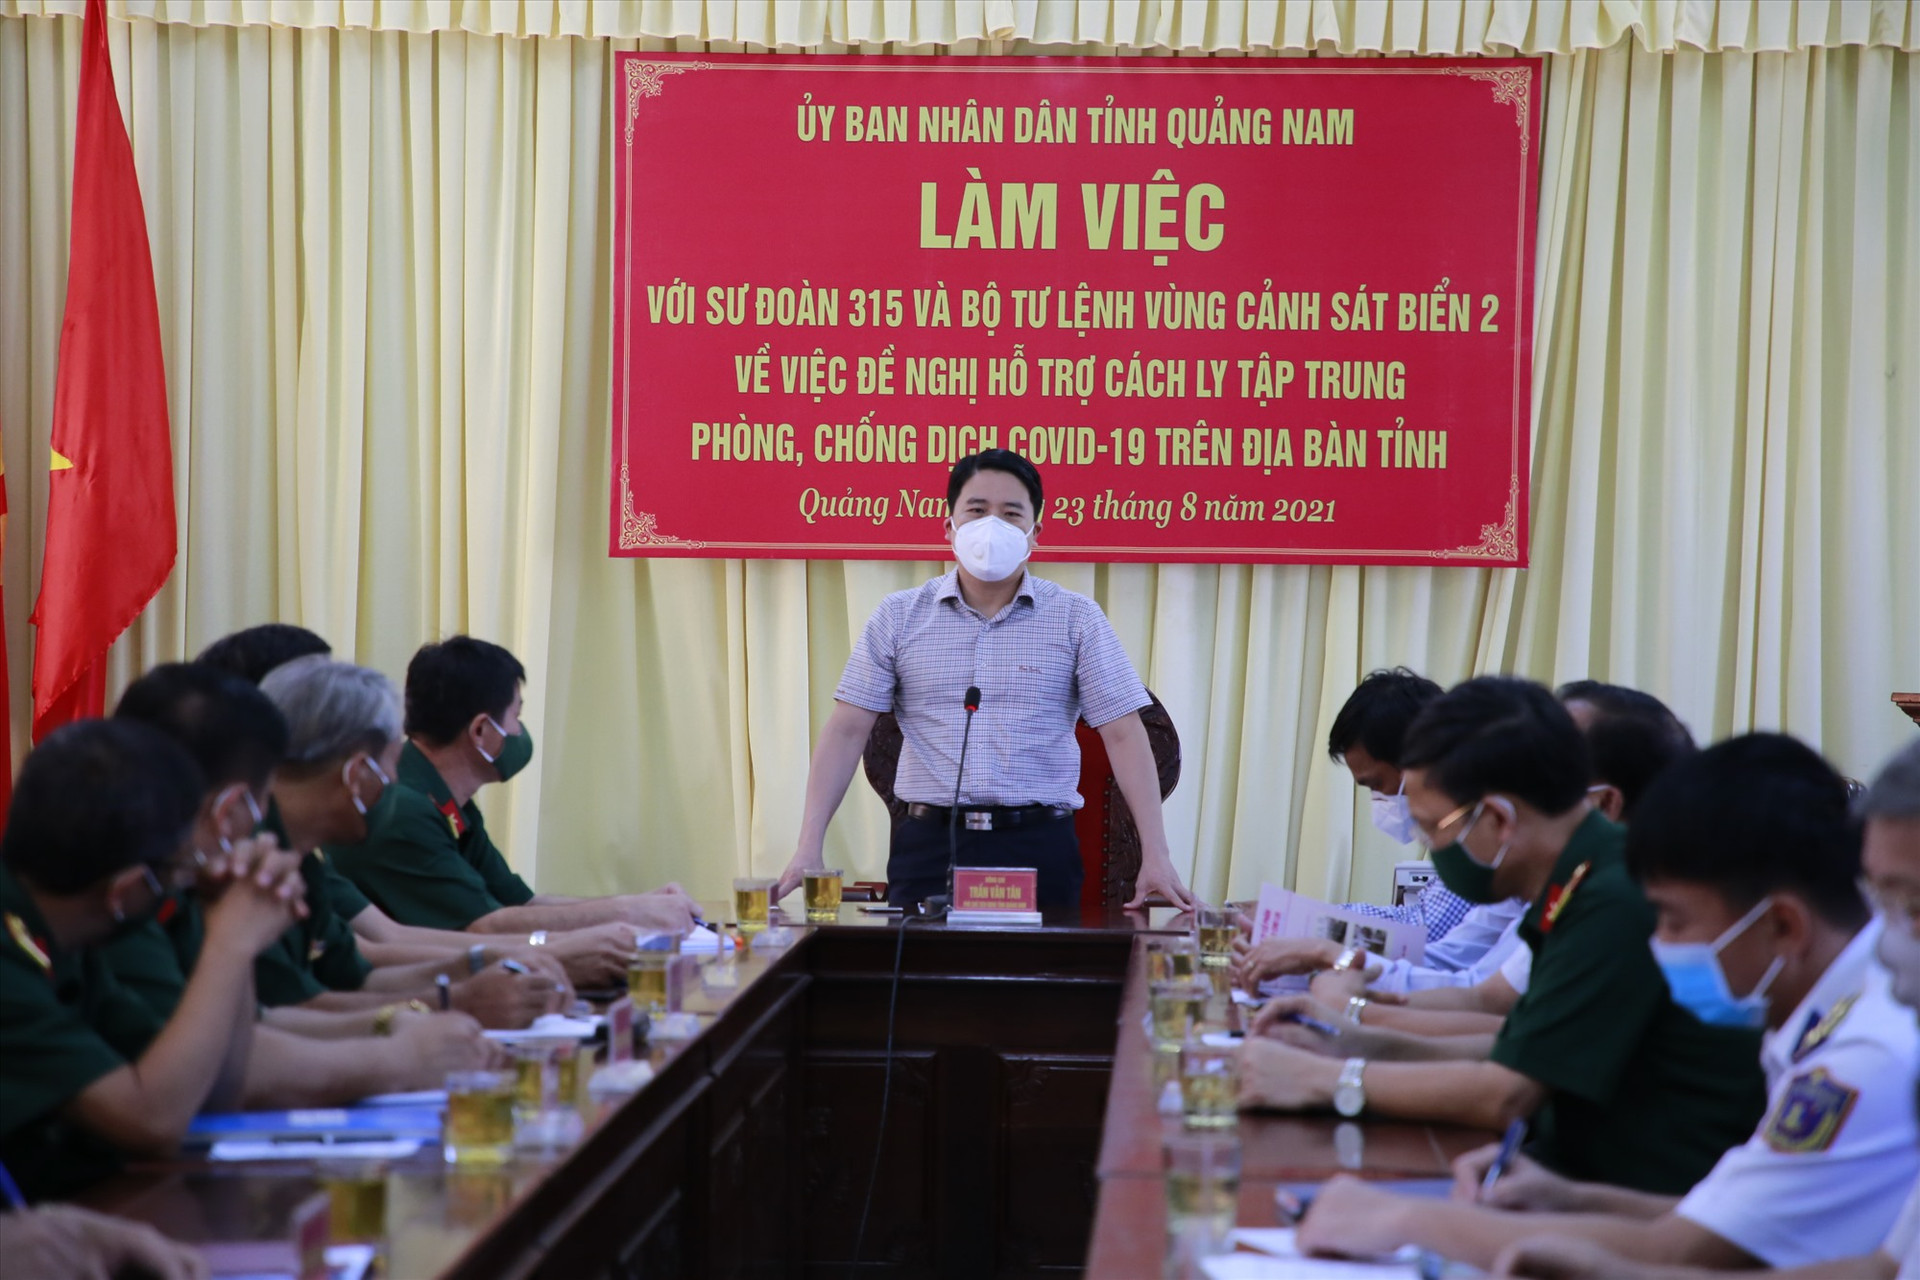 Phó Chủ tịch UBND tỉnh Trần Văn Tân đề nghị Sư đoàn 315 và Bộ tư lệnh Vùng Cảnh sát biển 2 vào cuộc mạnh mẽ, hỗ trợ nhiều hơn trong công tác phòng chống dịch Covid-19 khi diễn tiến dịch bệnh phức tạp hơn. Ảnh: T.C